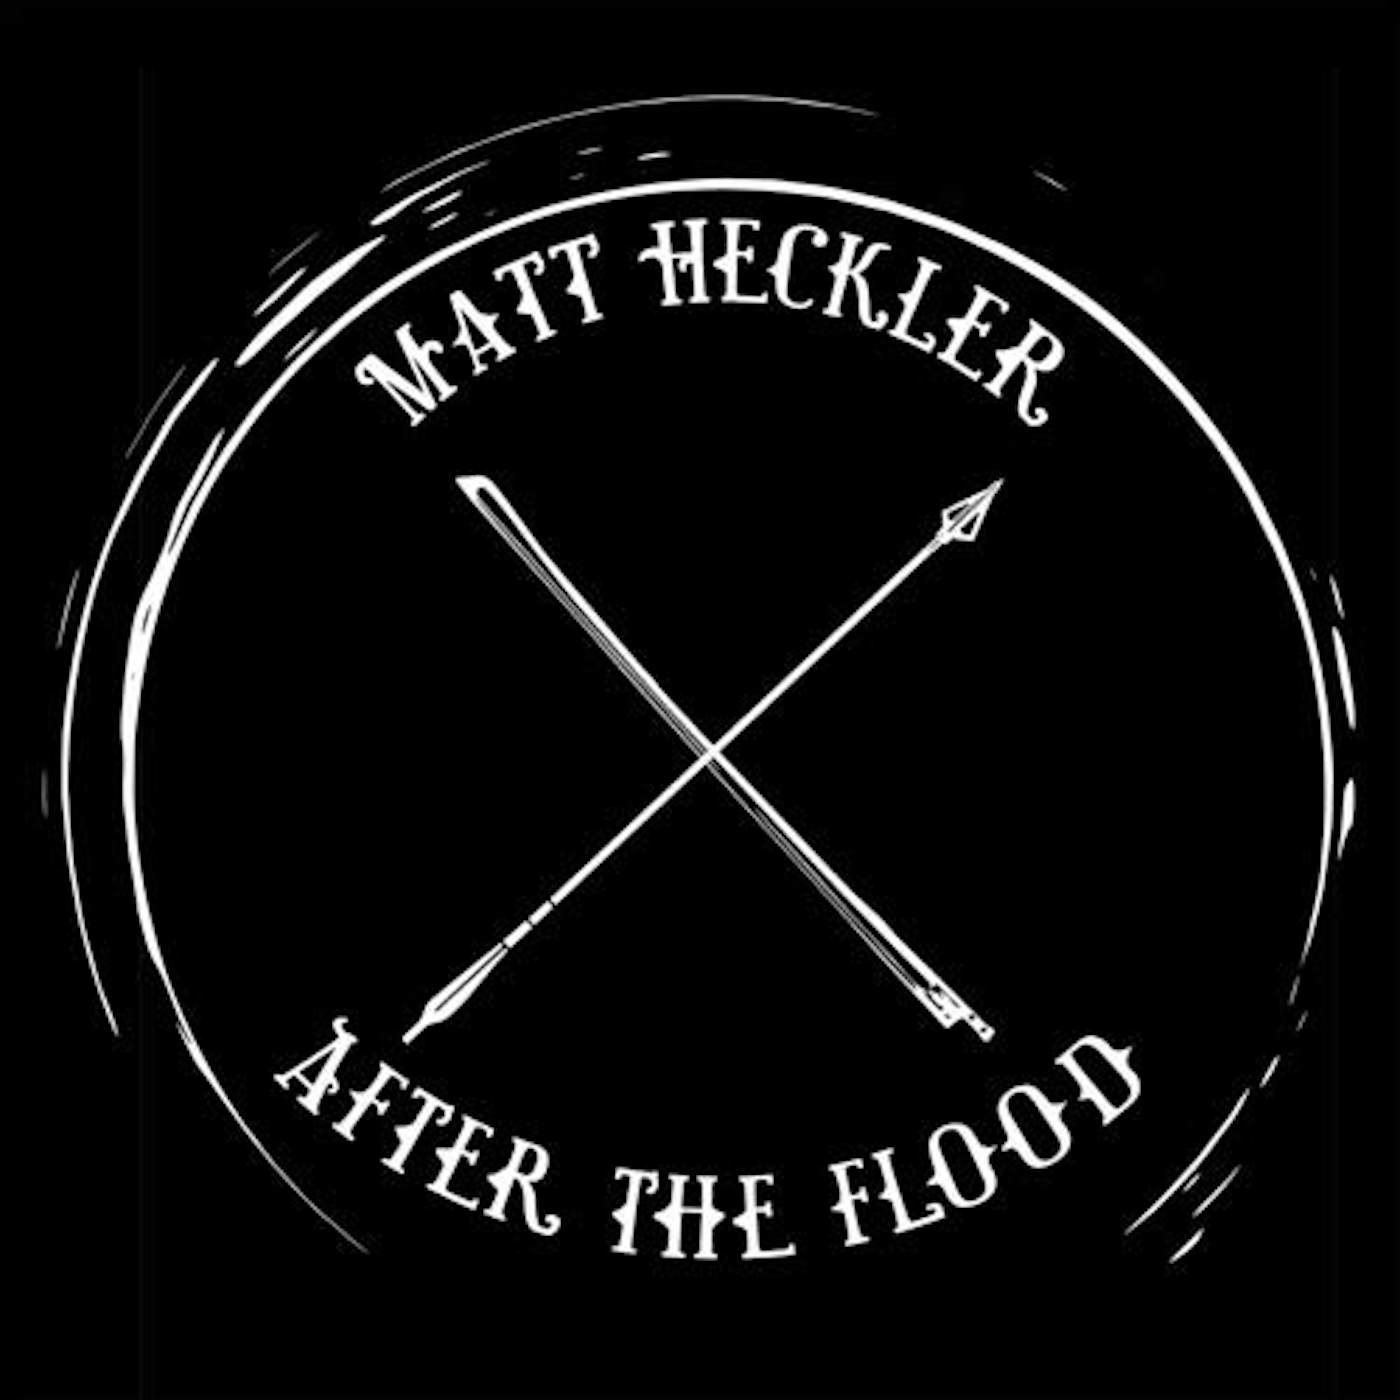 Matt Heckler AFTER THE FLOOD (DL) Vinyl Record